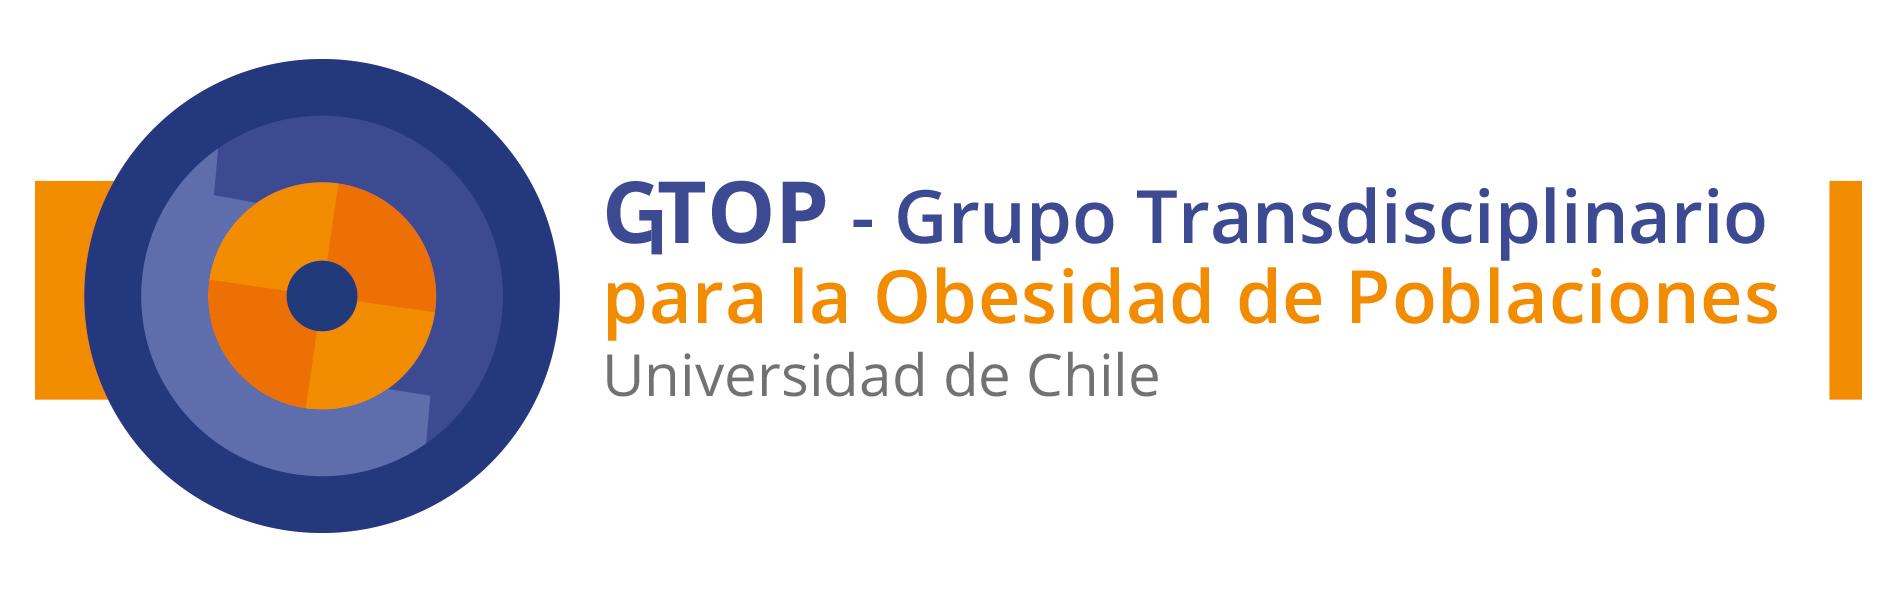 Grupo Transdisciplinario de Obesidad de Poblaciones, Universidad de Chile